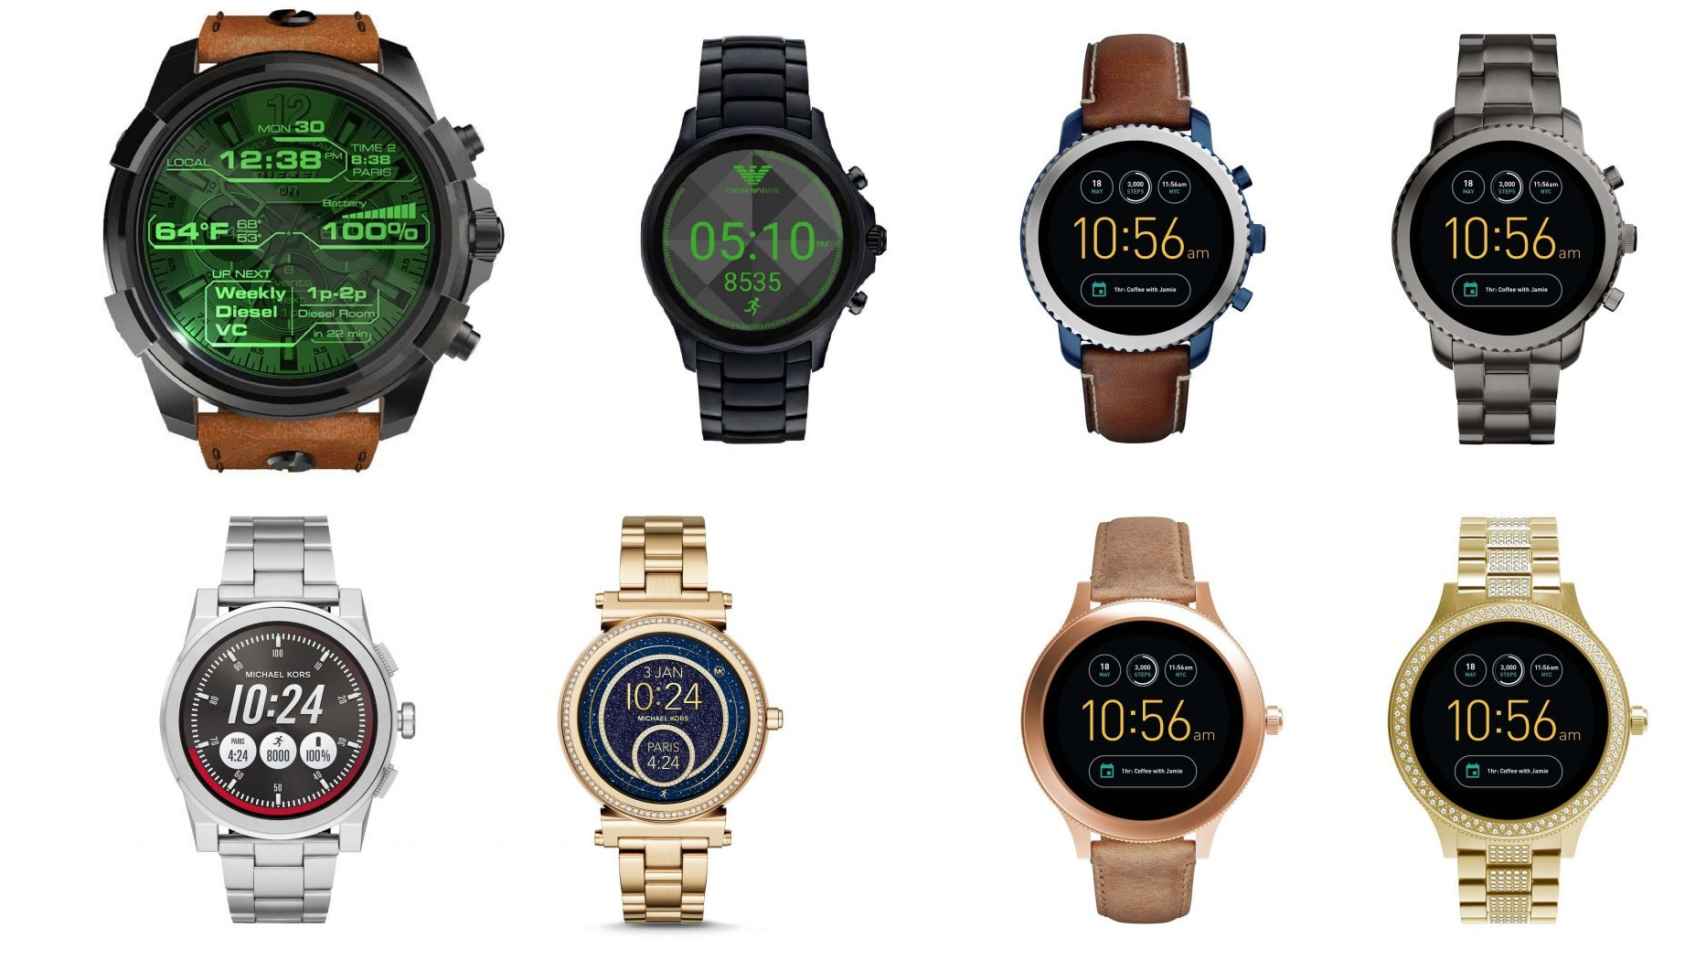 Fossil, Diesel, Armani y Michael Kors tienen nuevos relojes Android Wear